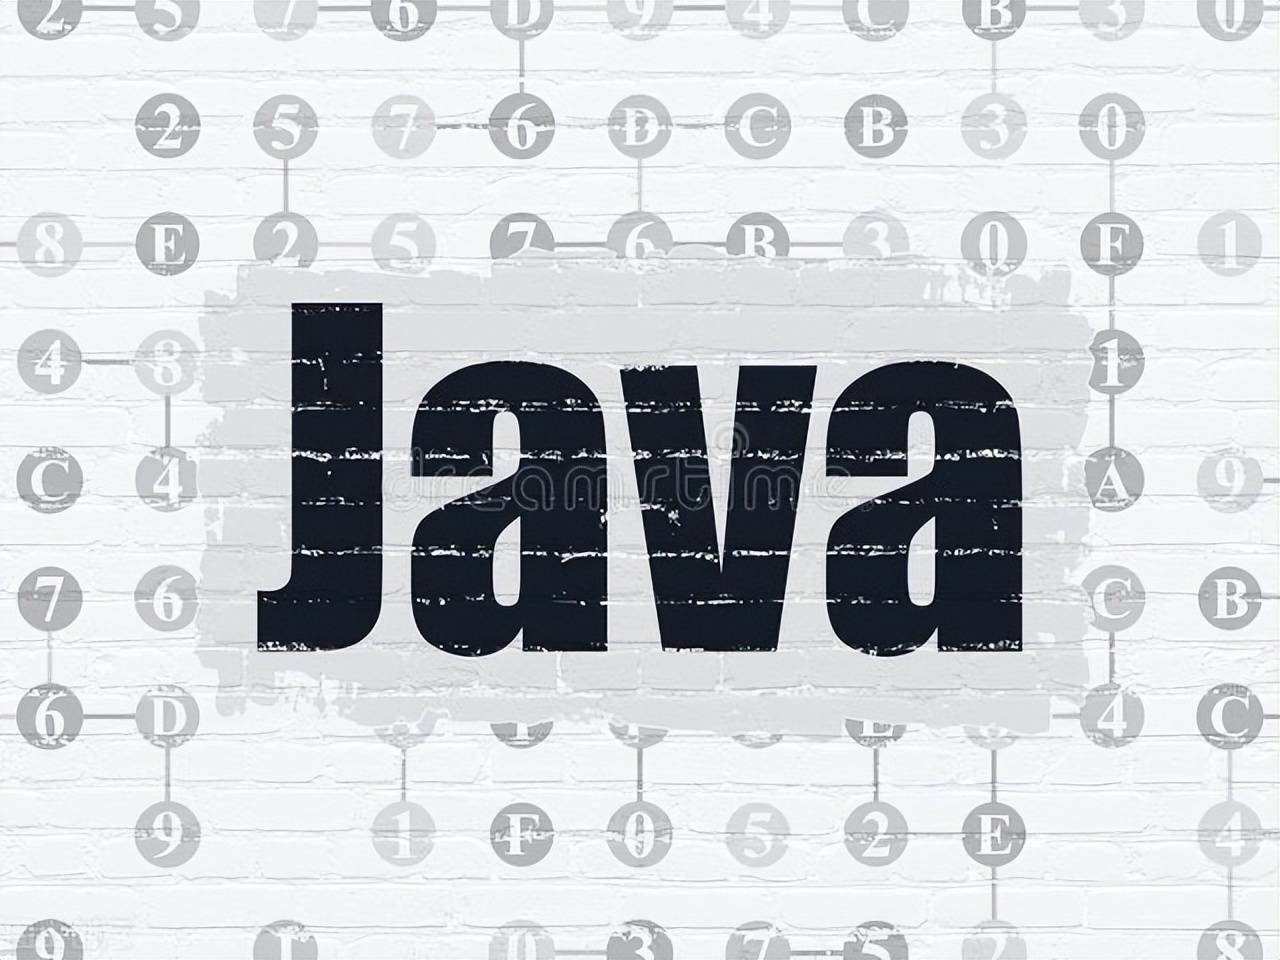 Java小白面试中应该如何准备？一般公司对Java开发的要求有哪些？